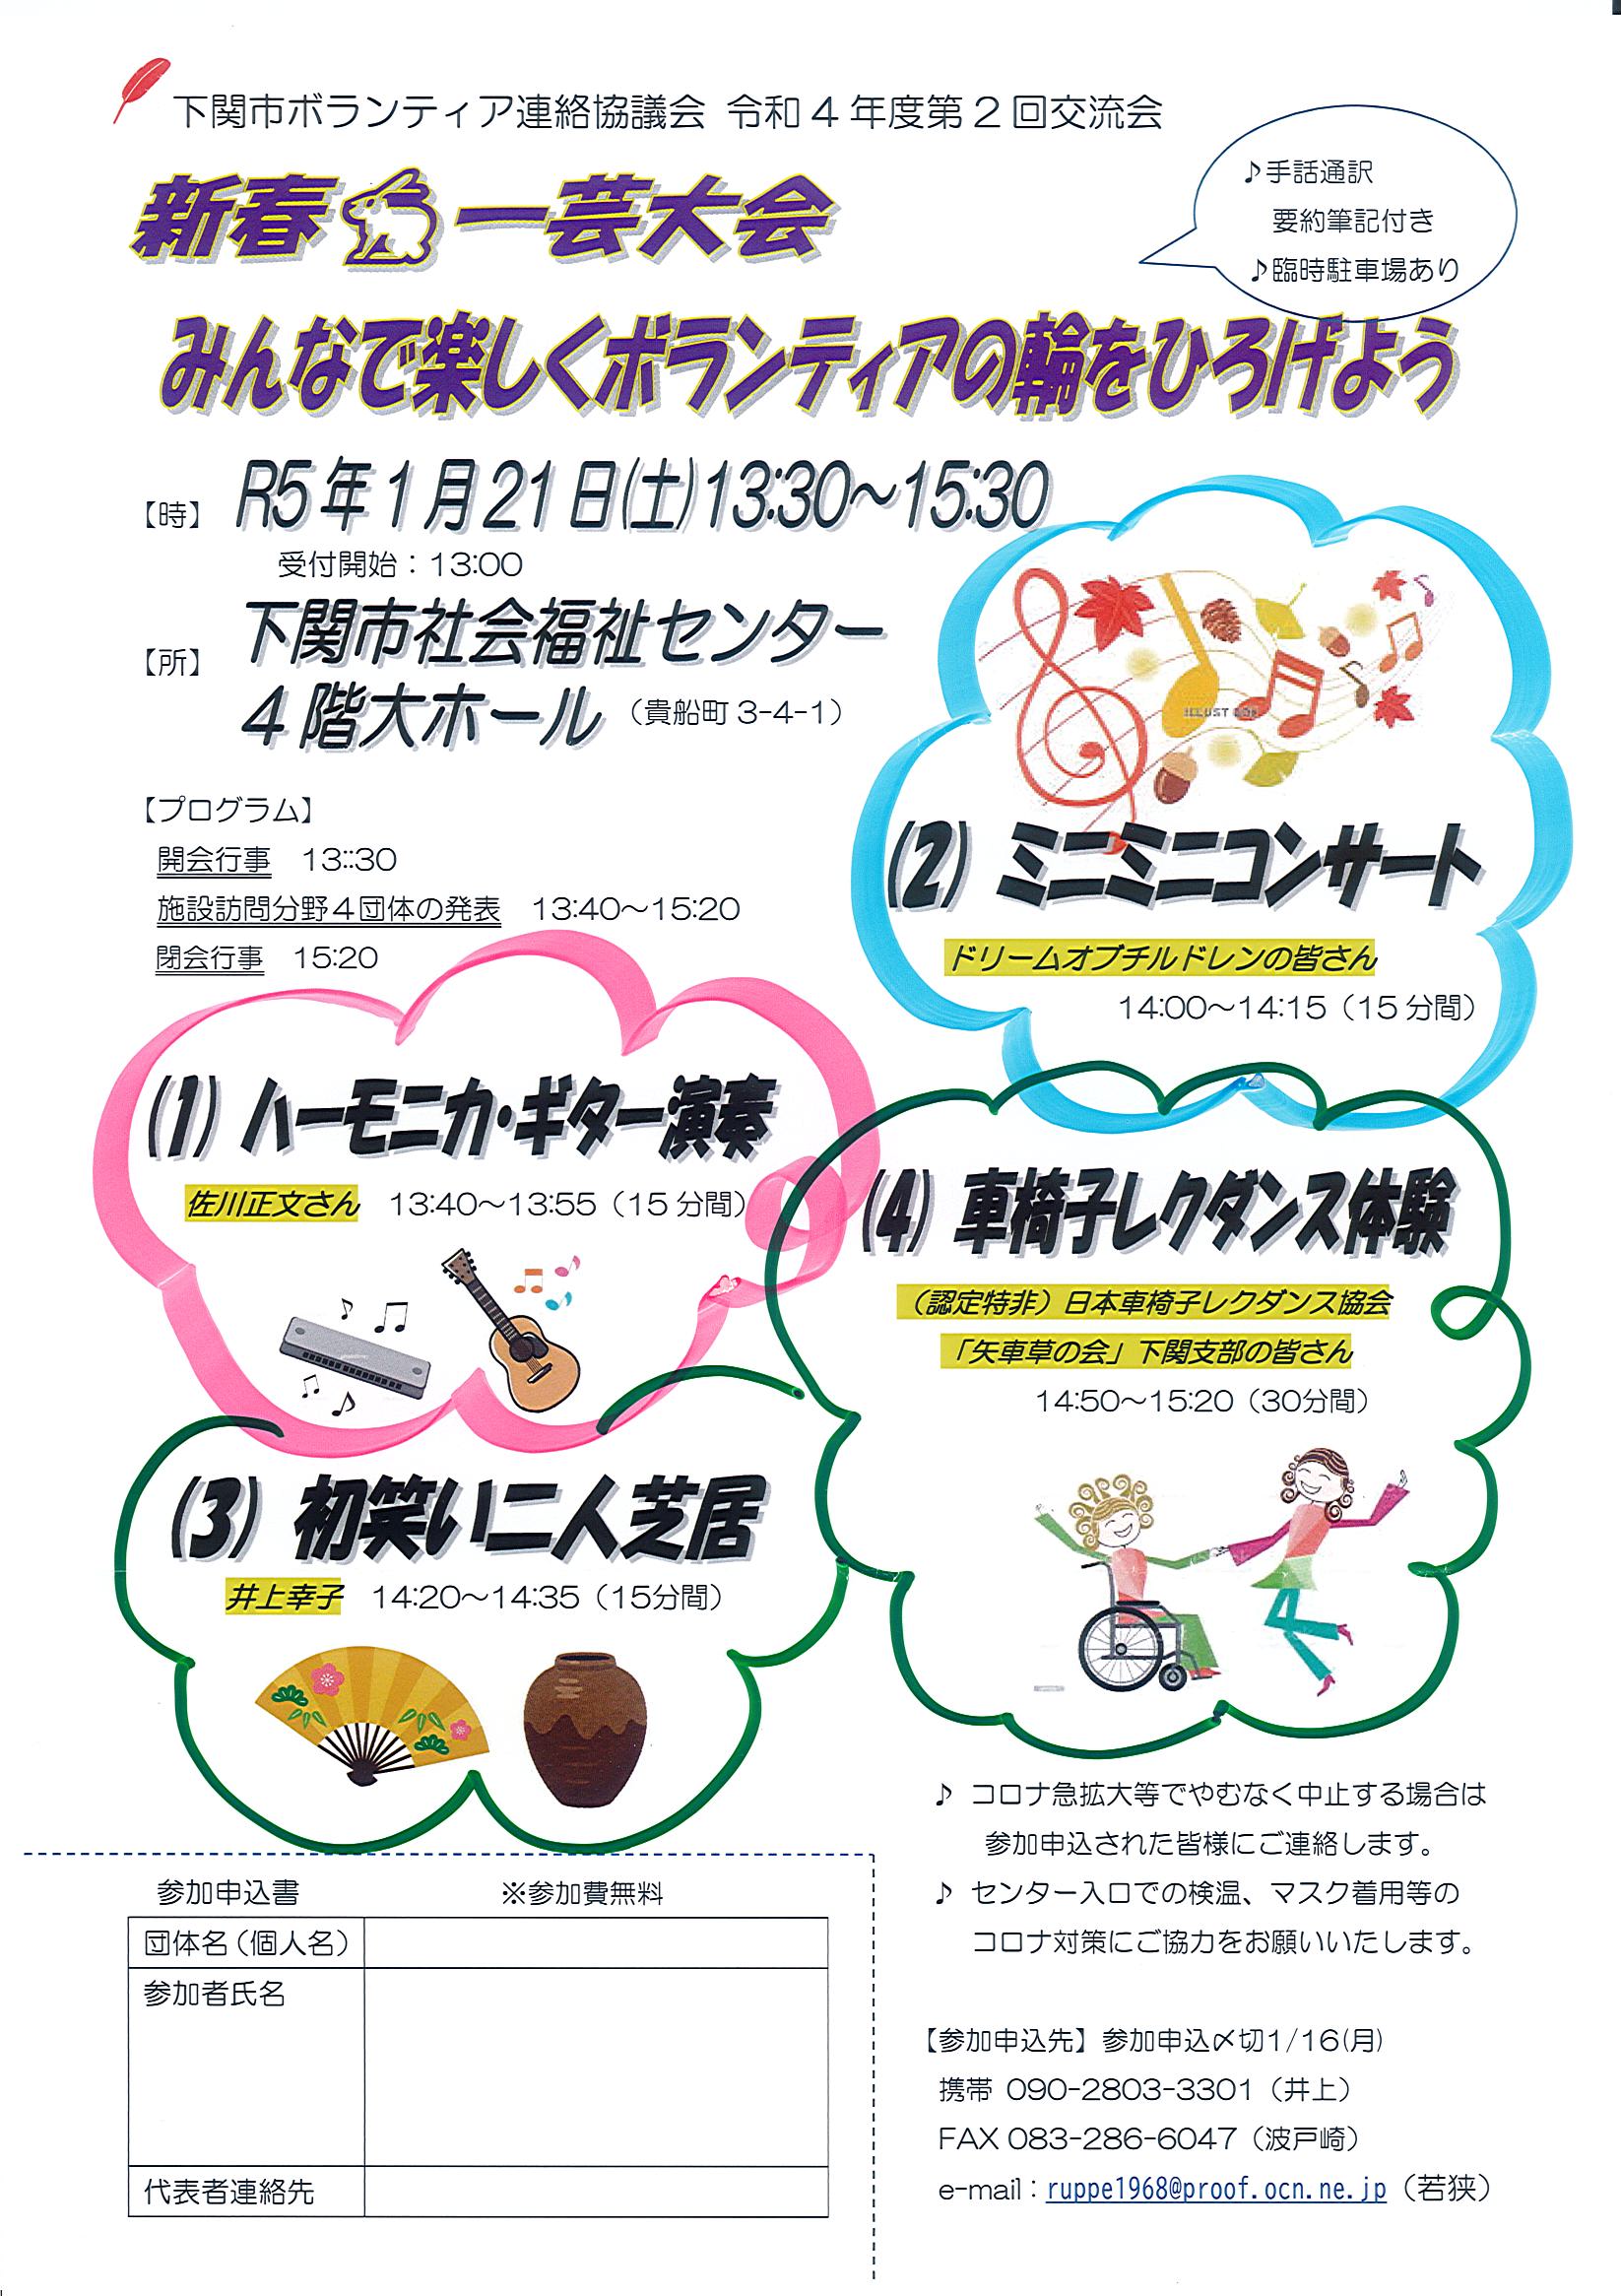 下関市ボランティア連絡協議会：新春一芸大会／みんなで楽しくボランティアの輪をひろげよう